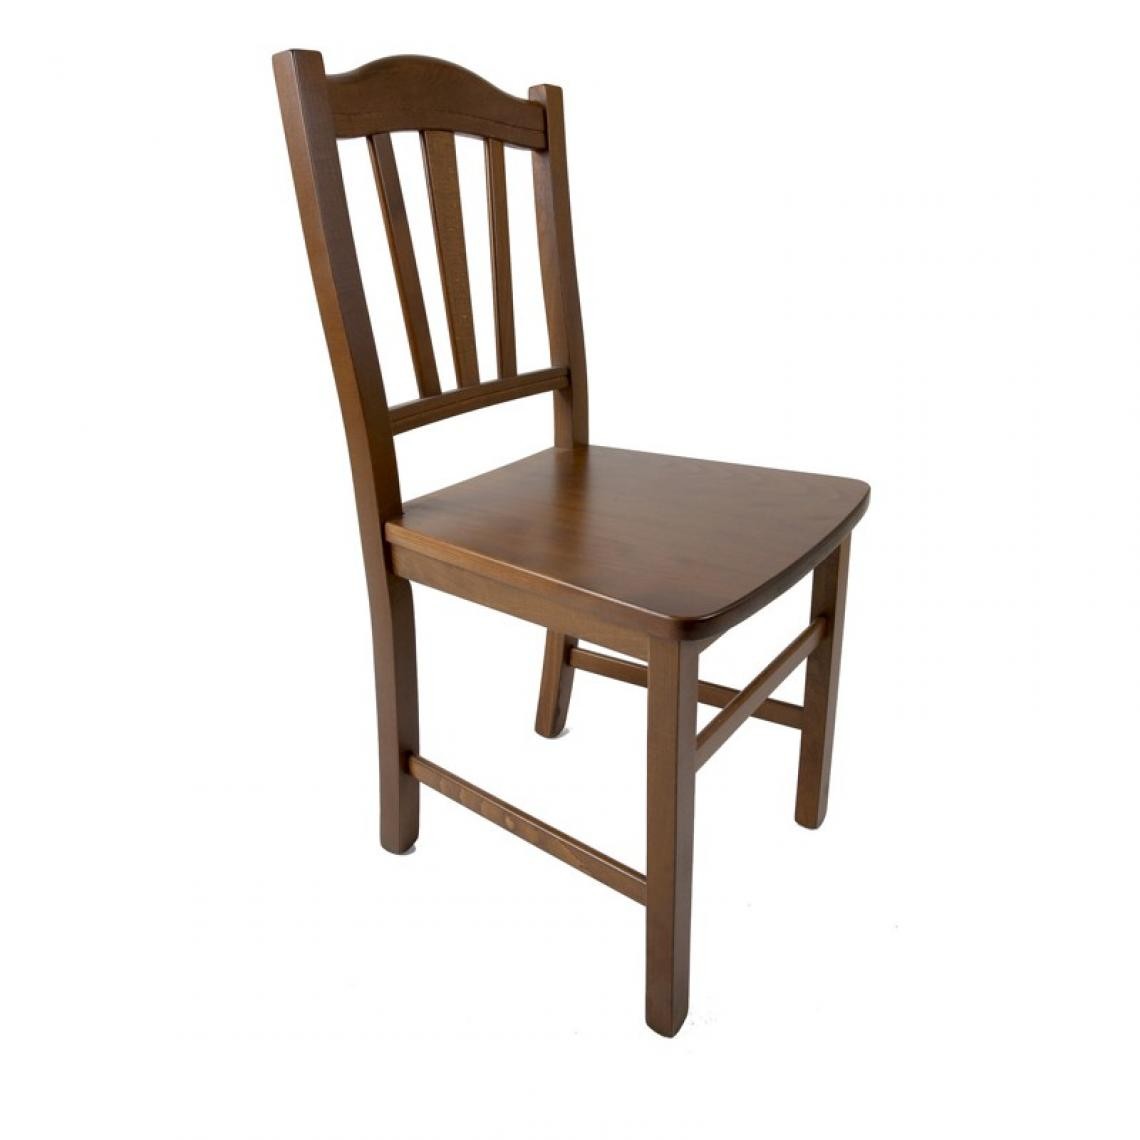 Webmarketpoint - Chaise en bois massif couleur noyer dossier décoré 46x51xh.95 cm - Chaises